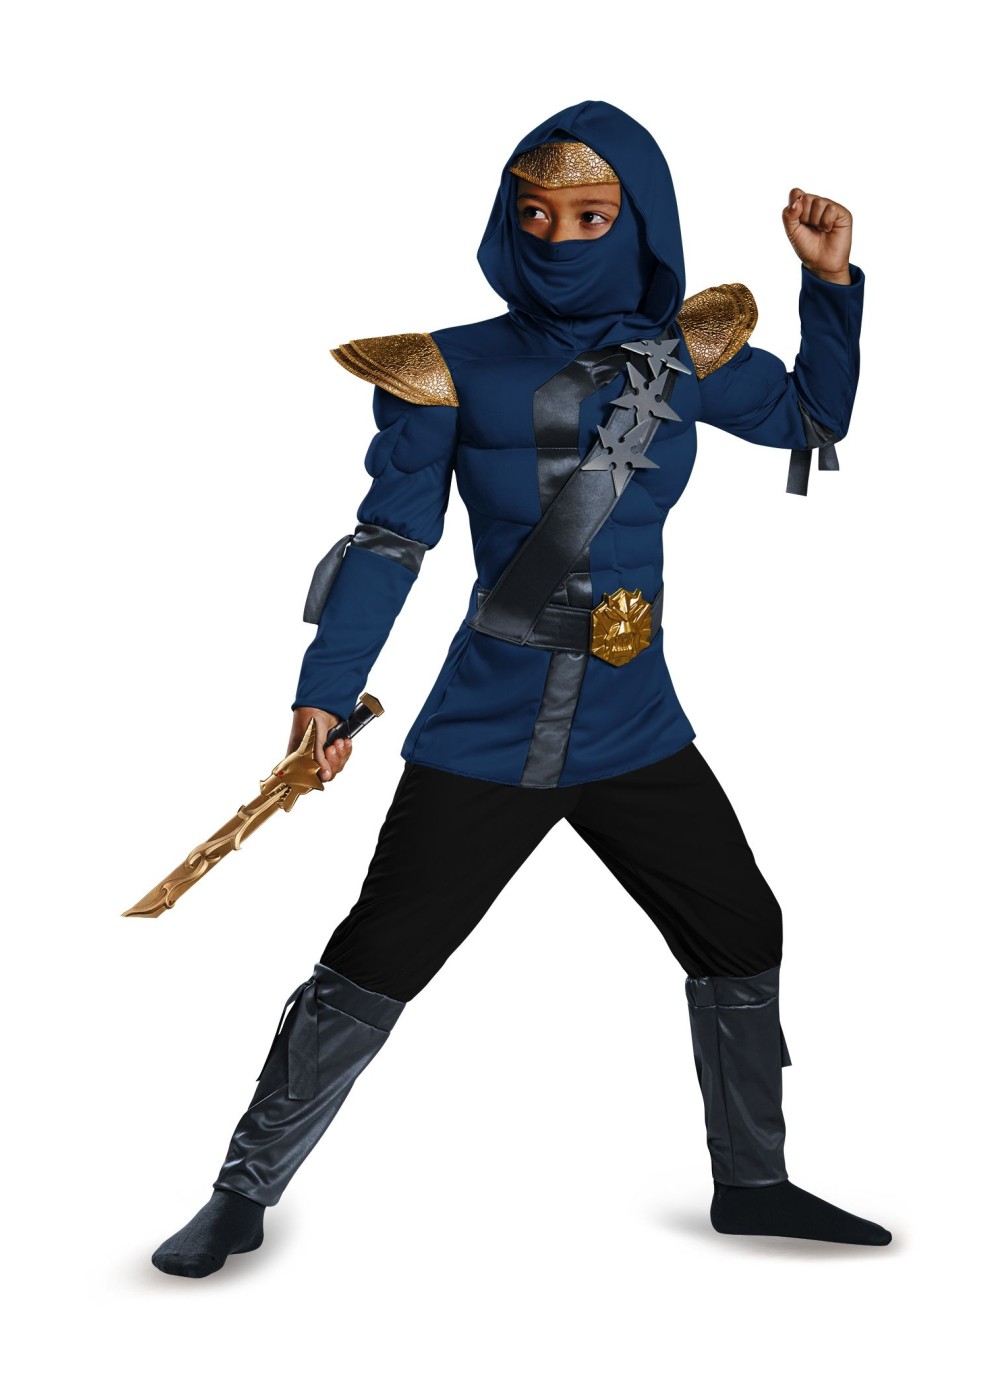 Adult Ninja Master Costume